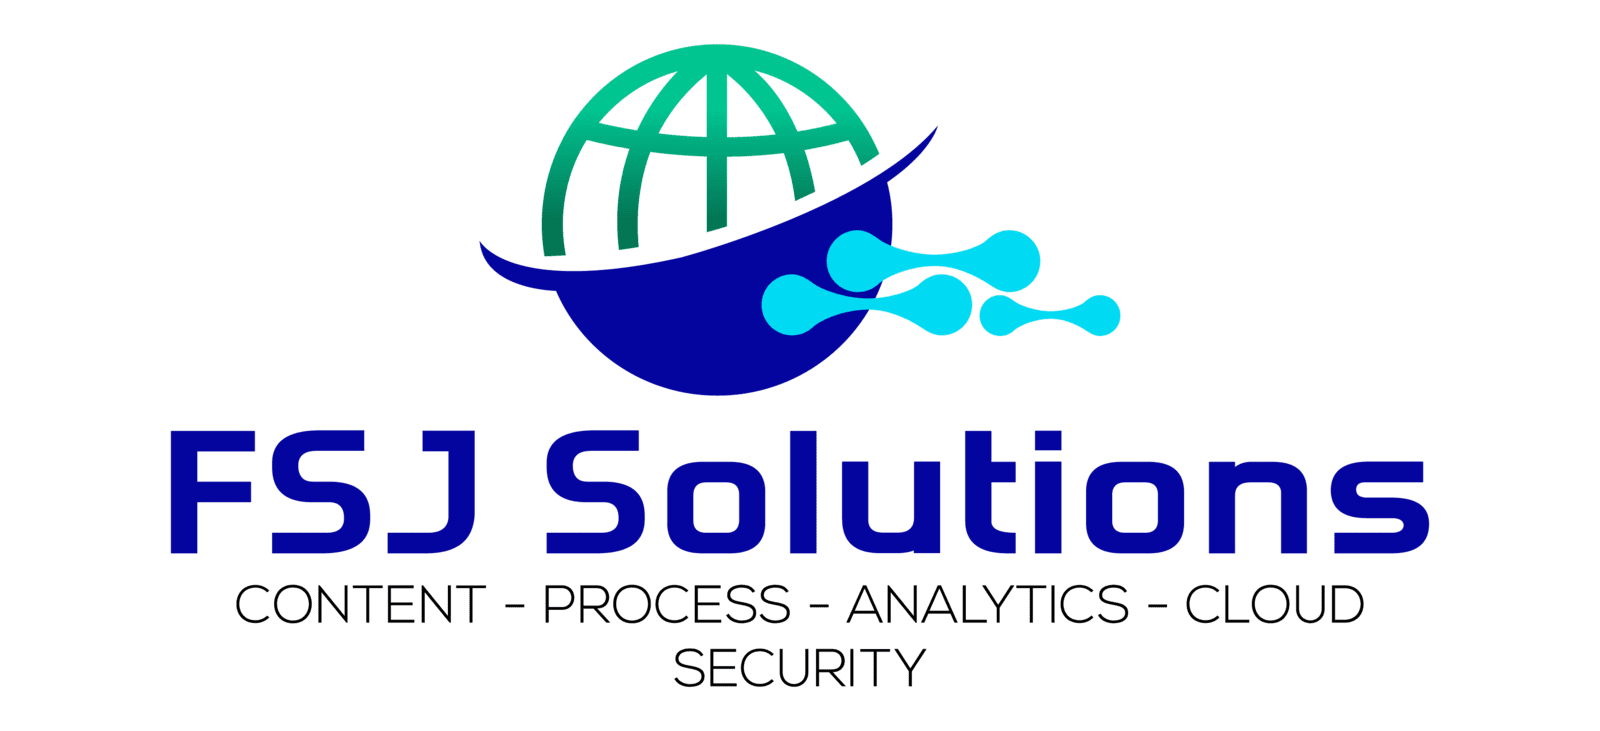 FSJ Solutions LTD